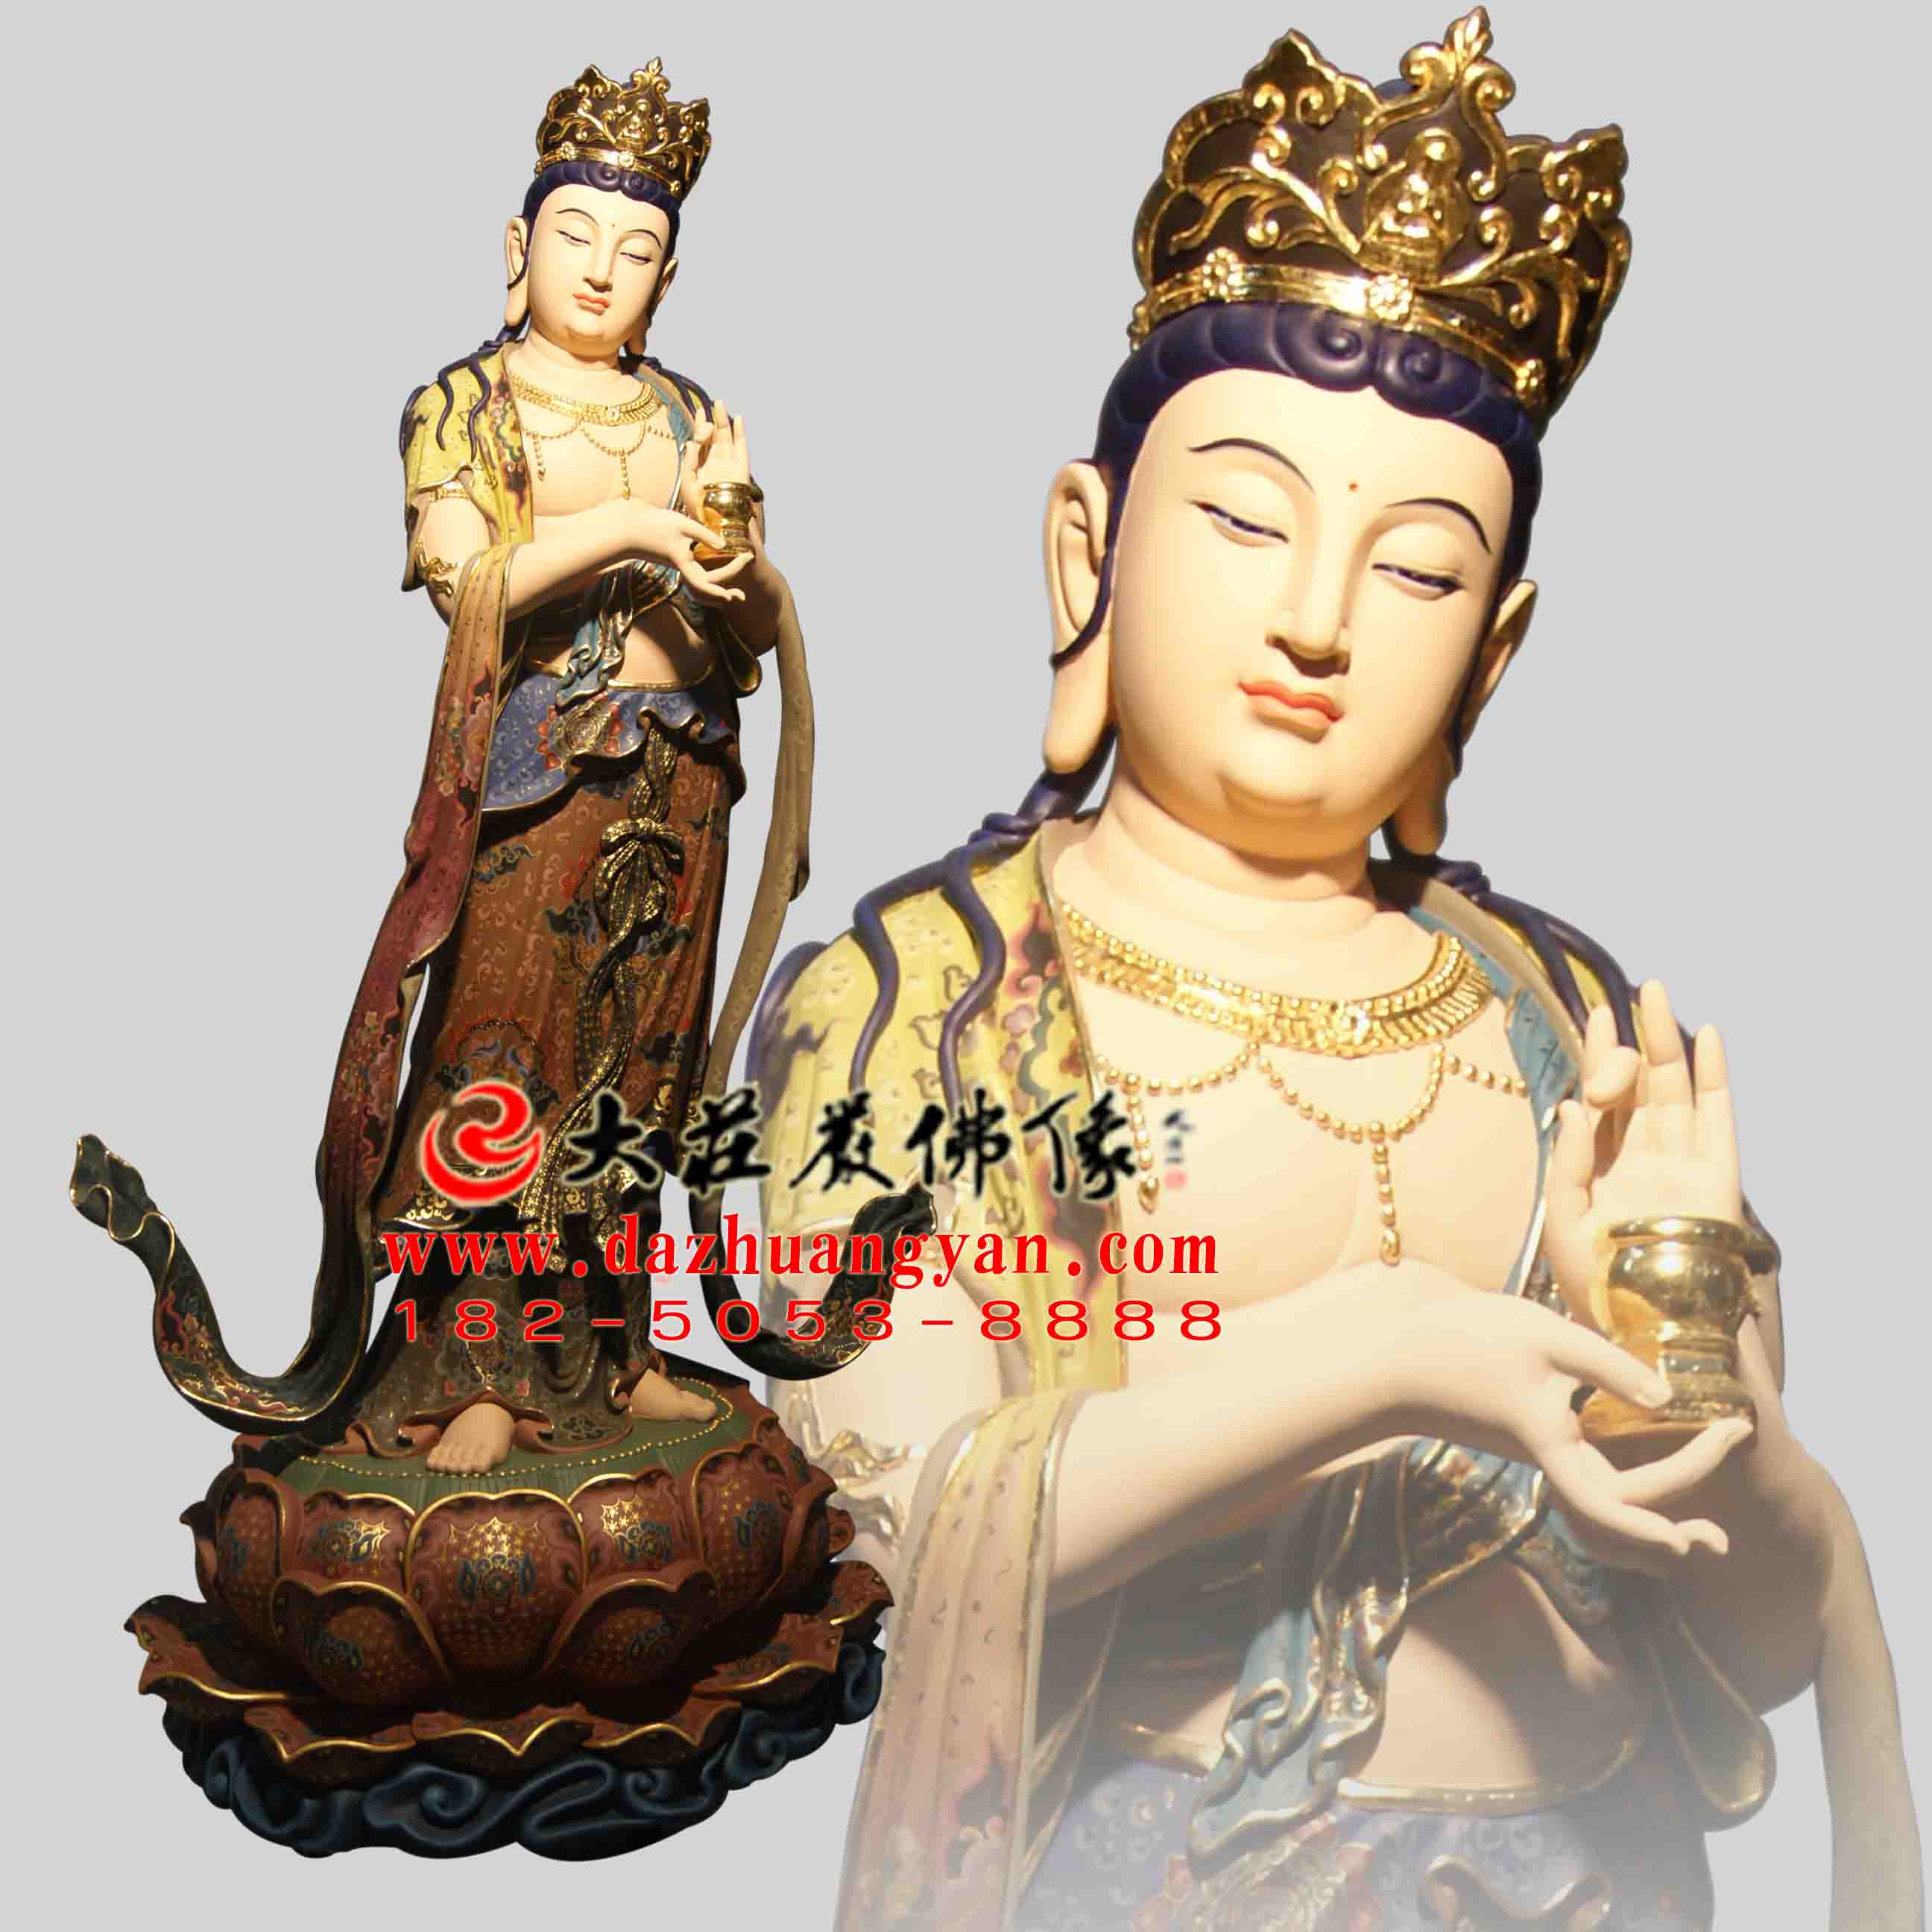 生漆脱胎八大菩萨之地藏菩萨彩绘塑像【1703】